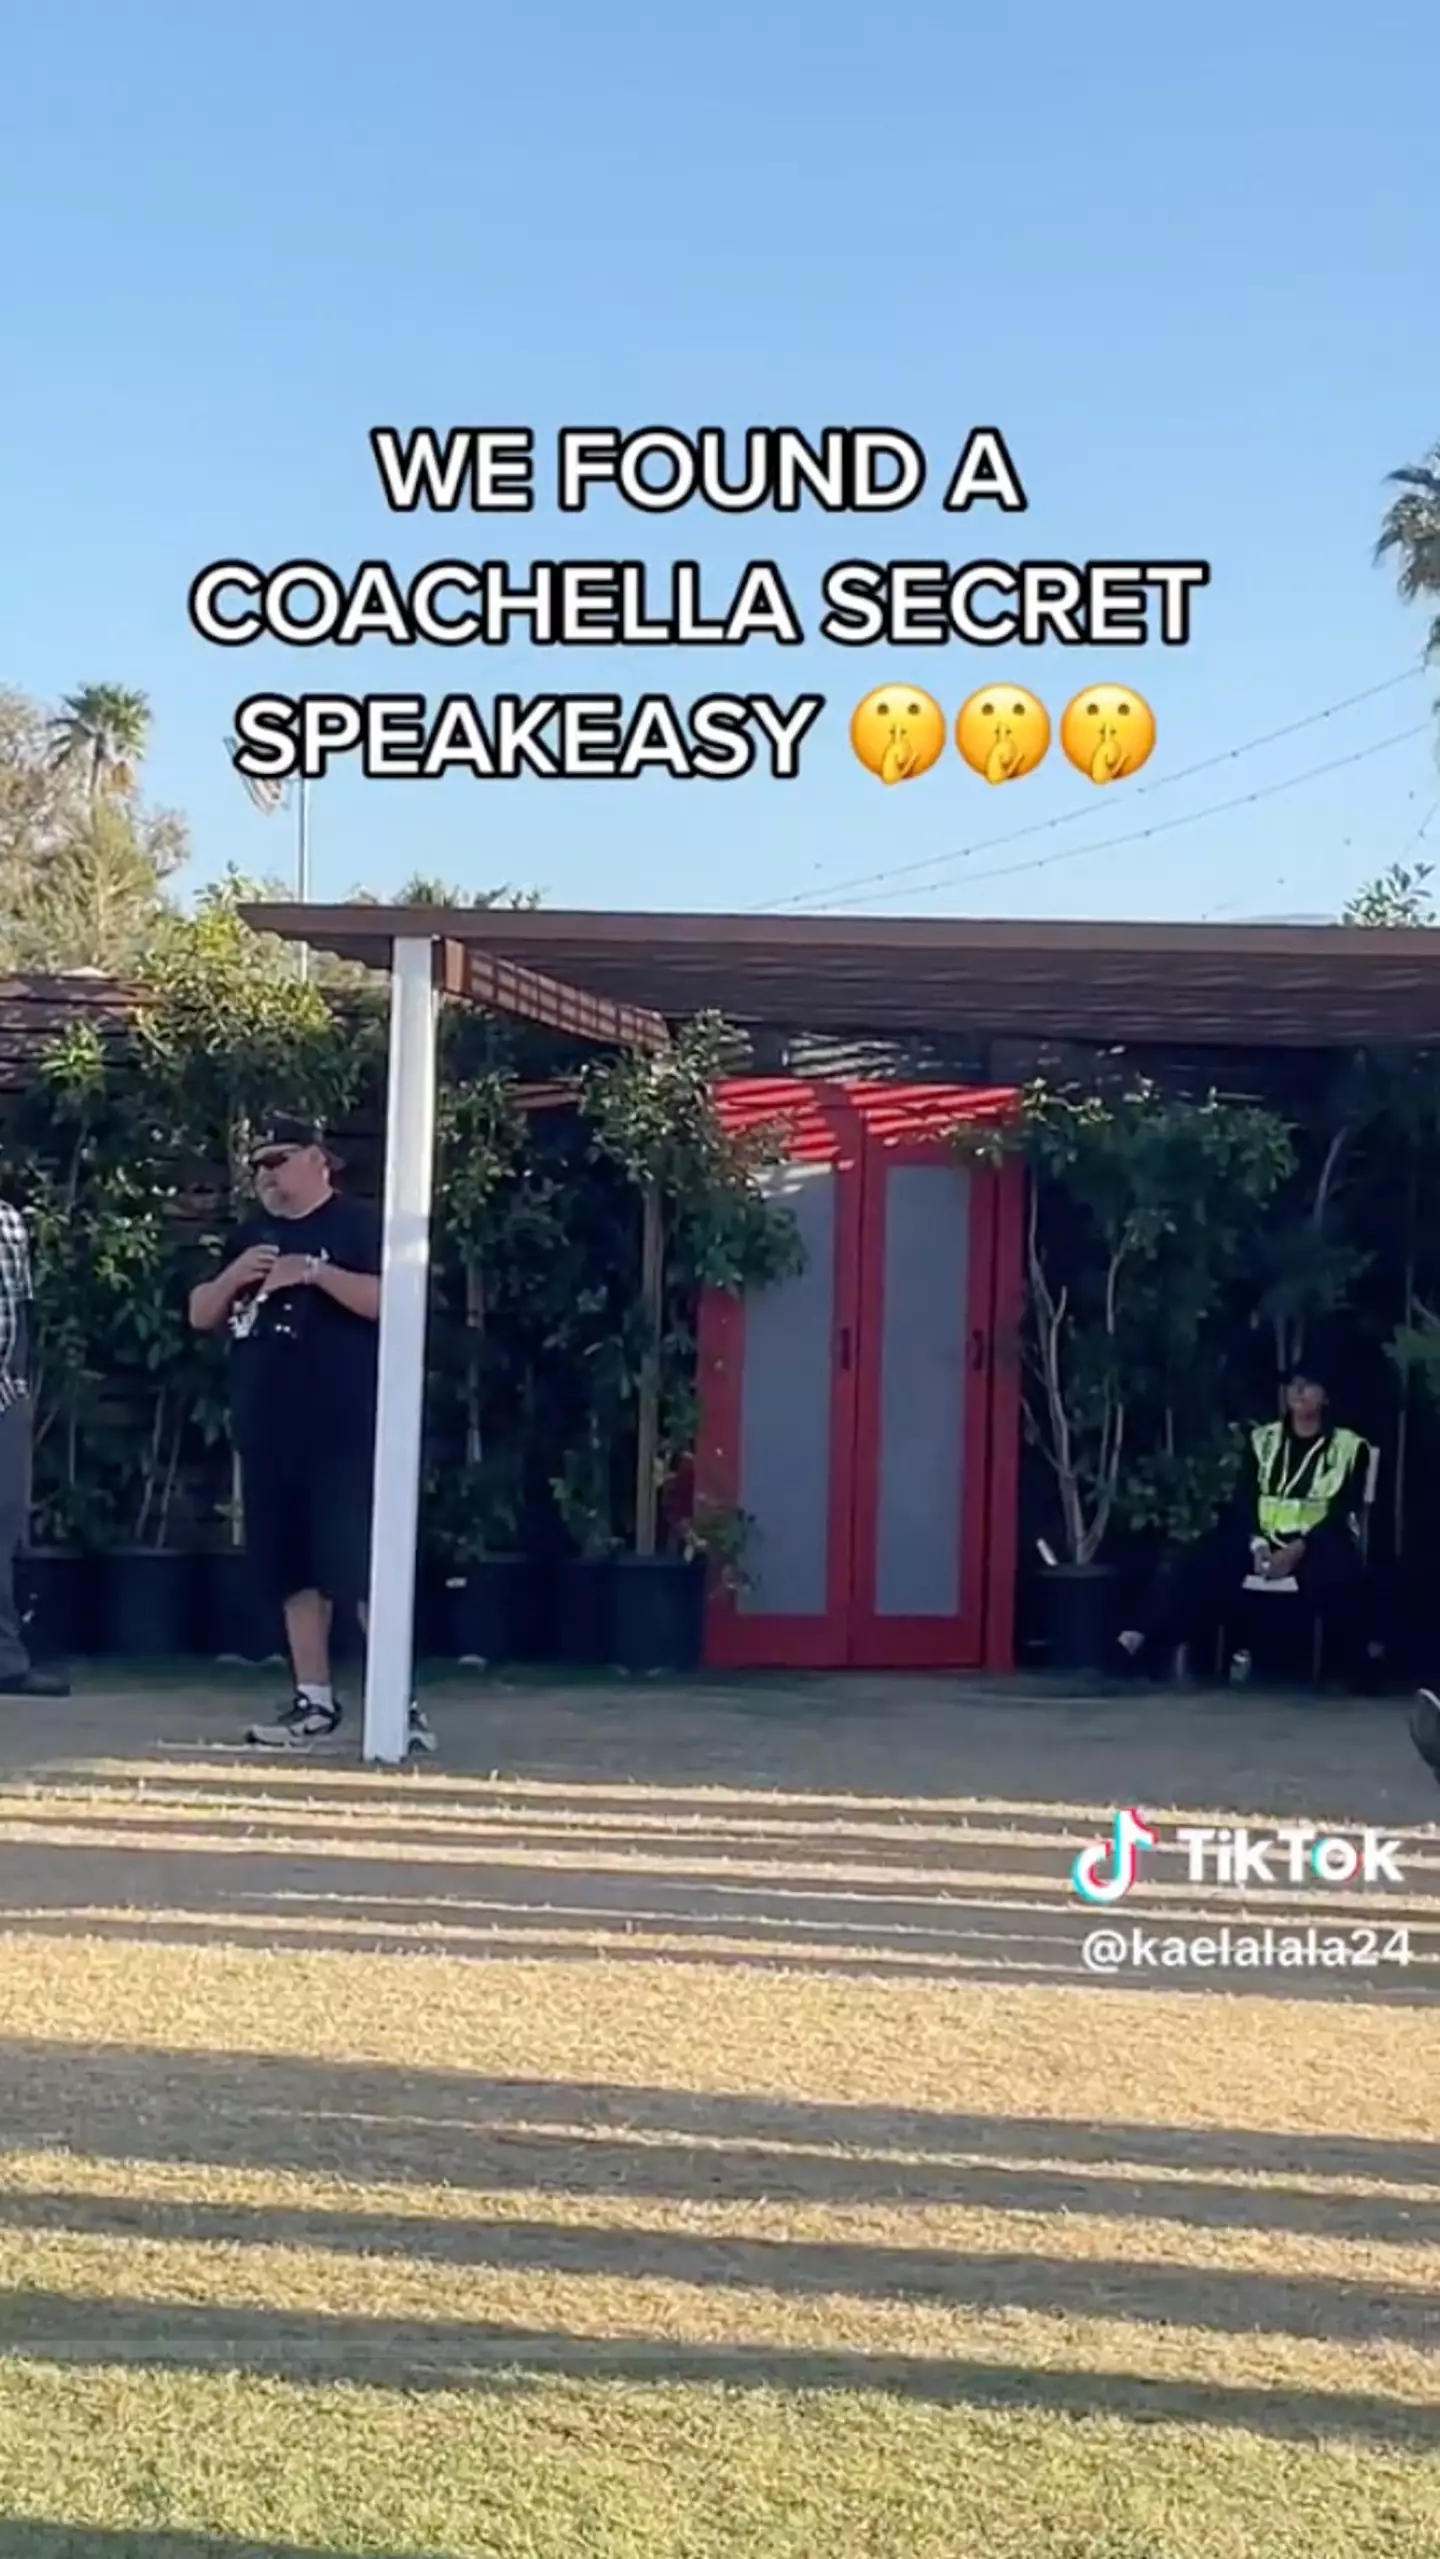 The TikToker found a hidden speakeasy at Coachella.